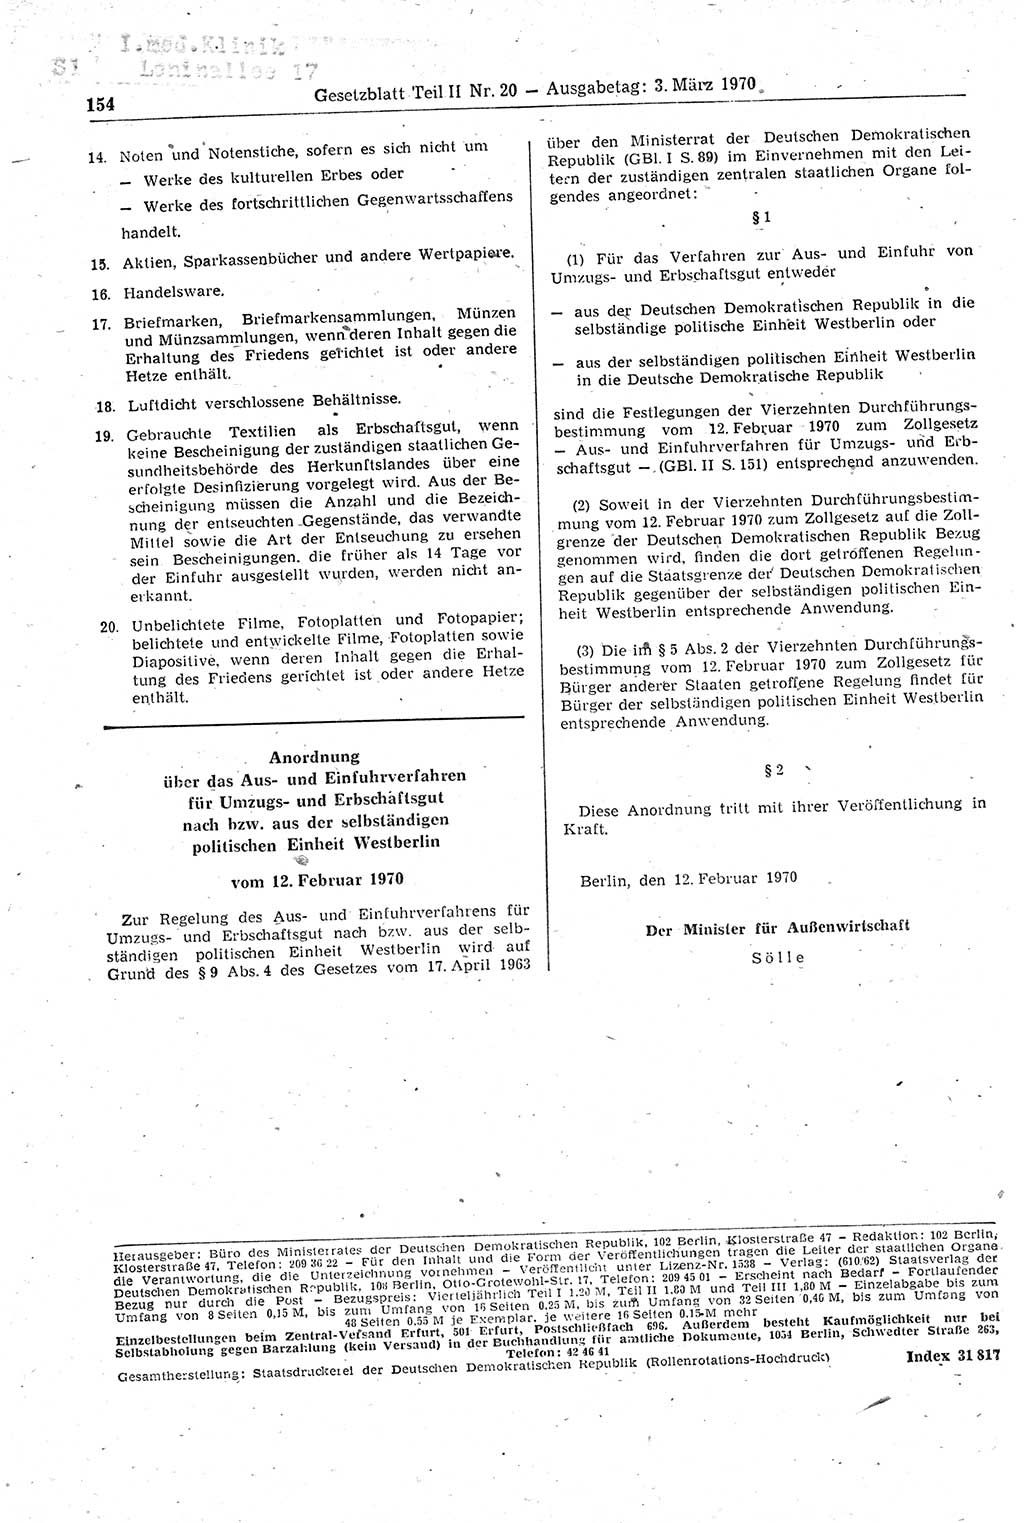 Gesetzblatt (GBl.) der Deutschen Demokratischen Republik (DDR) Teil ⅠⅠ 1970, Seite 154 (GBl. DDR ⅠⅠ 1970, S. 154)